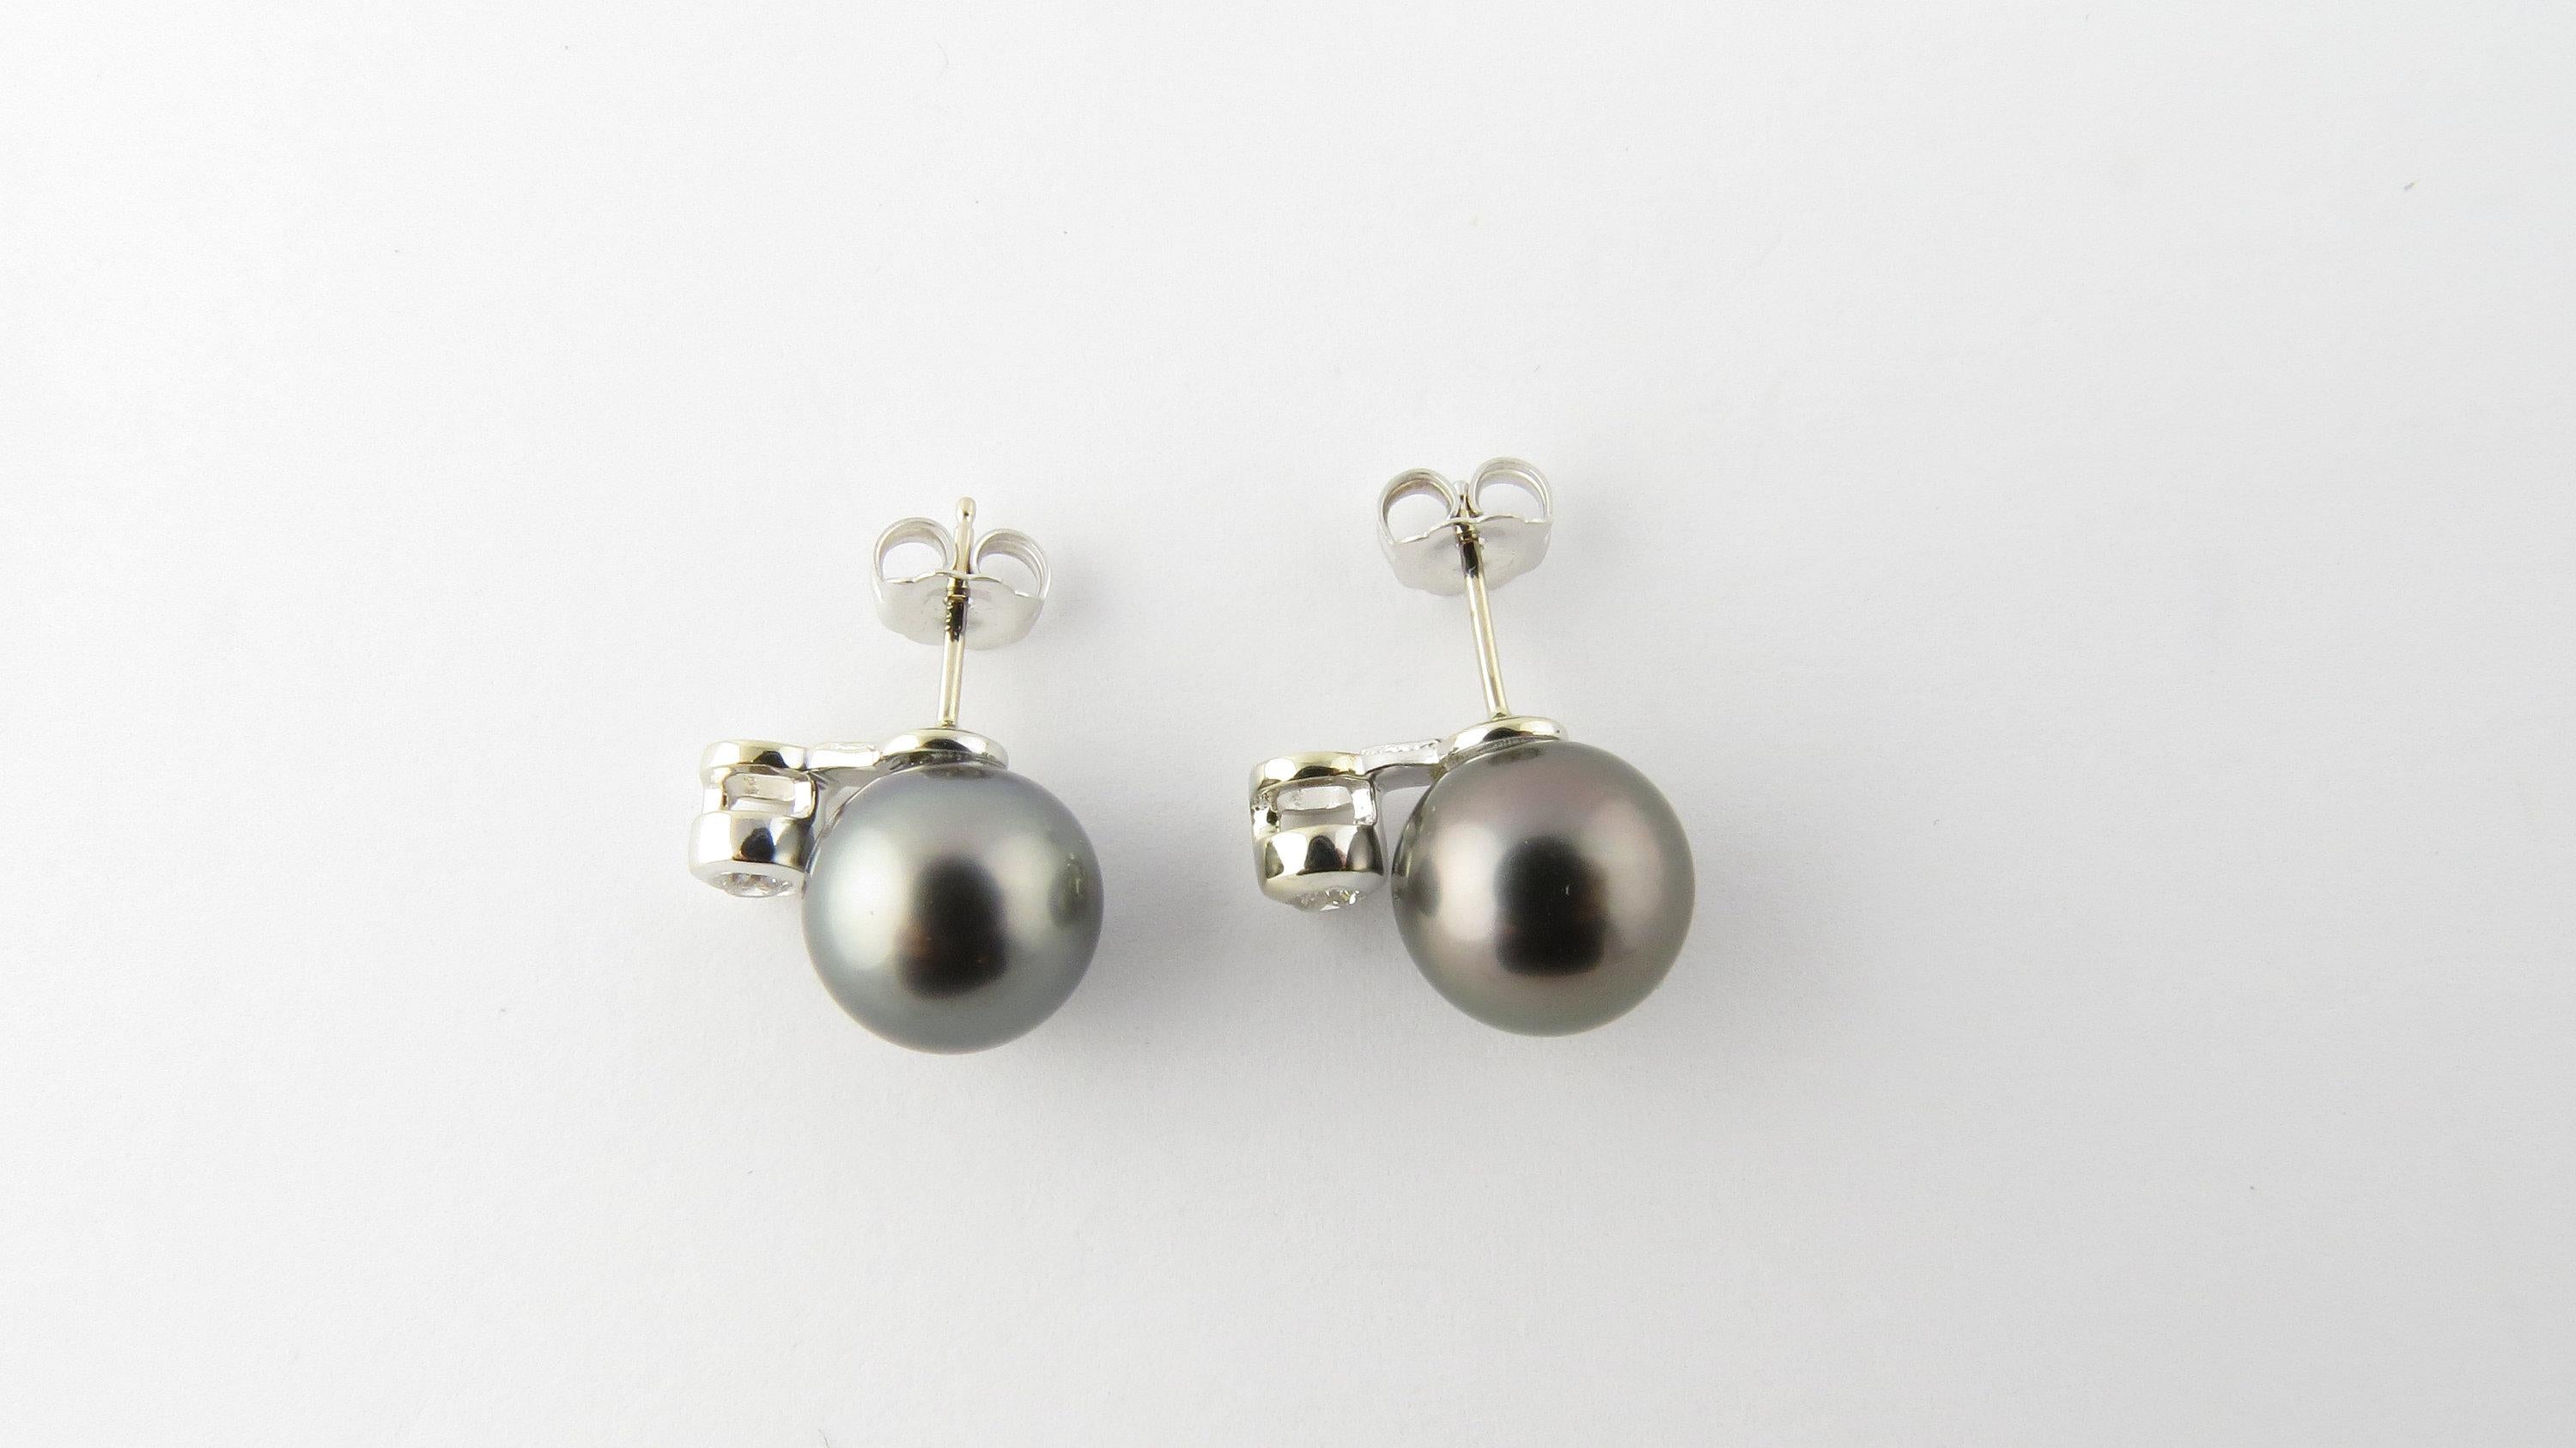 Vintage 14 Karat Weißgold Schwarz Perle und Diamant-Ohrringe-

Diese atemberaubenden Ohrringe bestehen aus je einer 10 mm großen schwarzen Perle und einem runden Diamanten mit Brillantschliff, gefasst in wunderschön detailliertem 14-karätigem